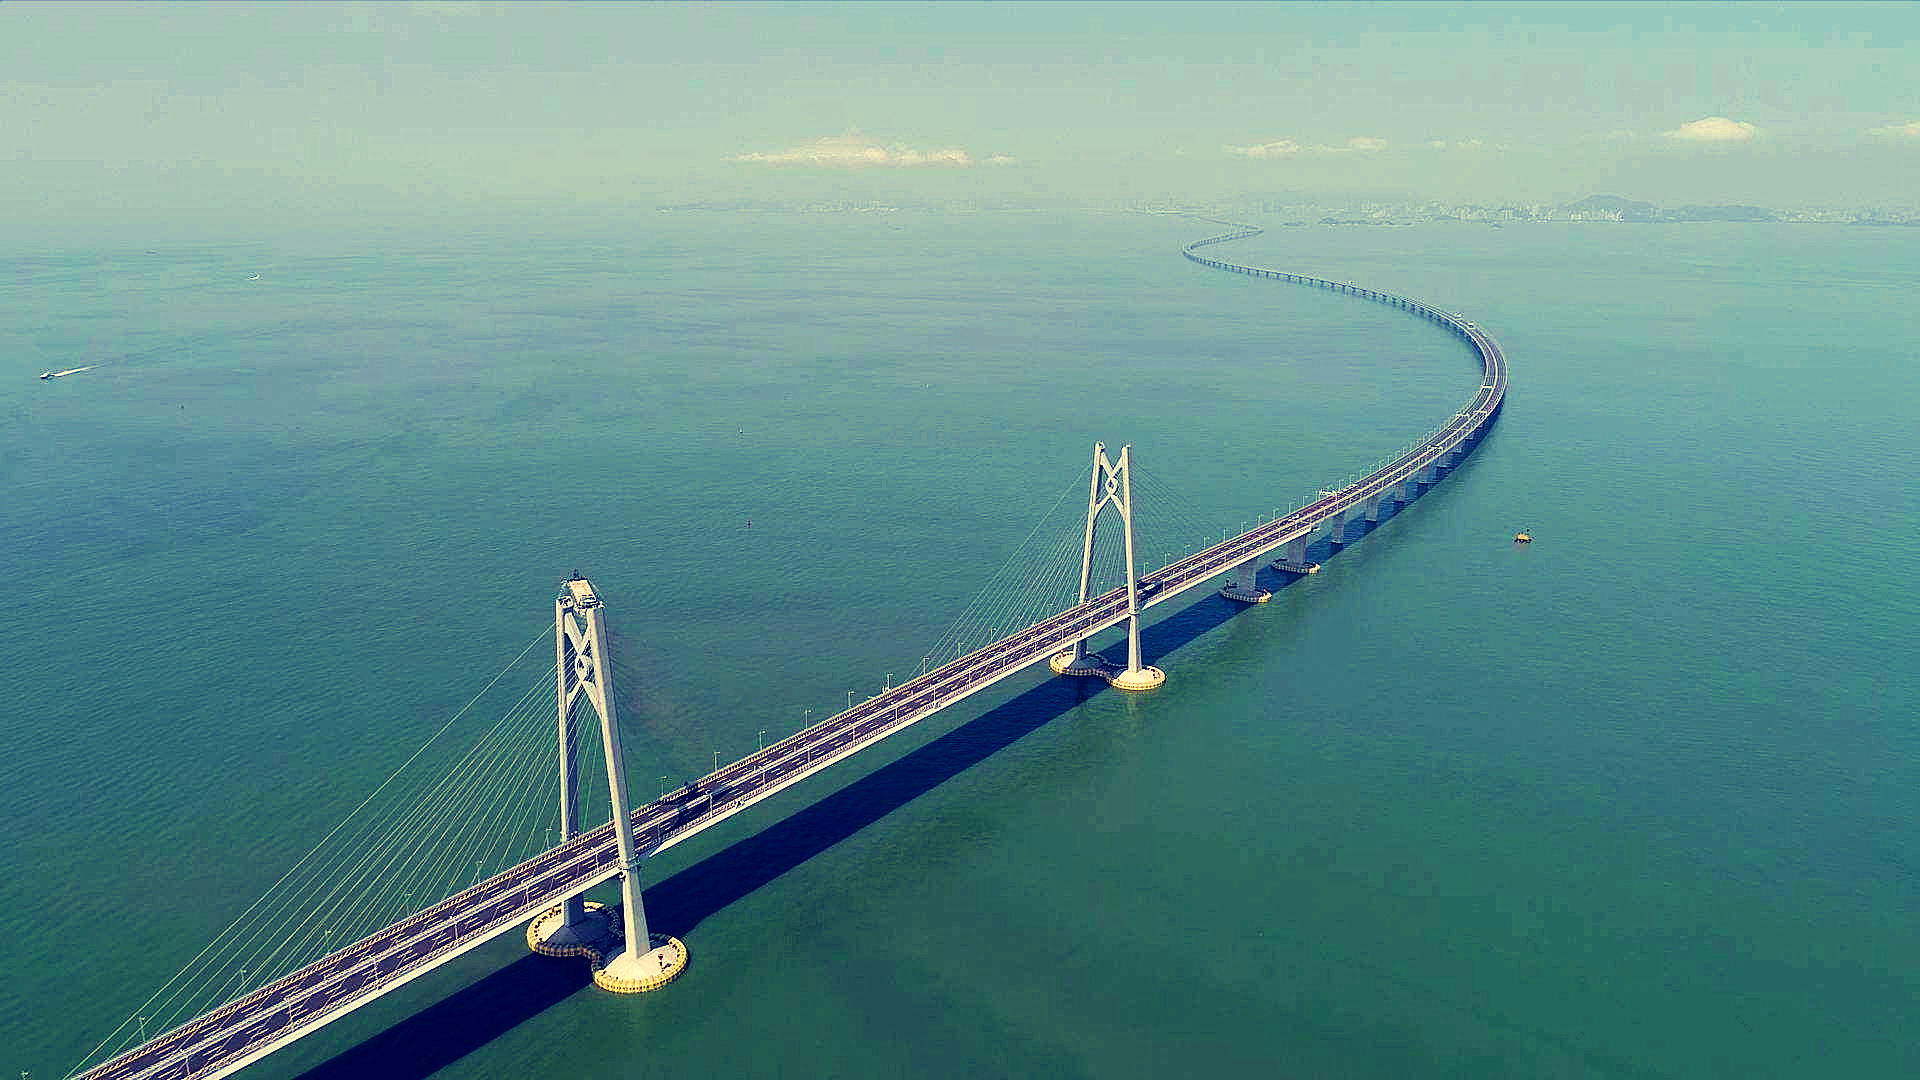 港珠澳大桥是怎么连接珠海澳门香港三地的?简